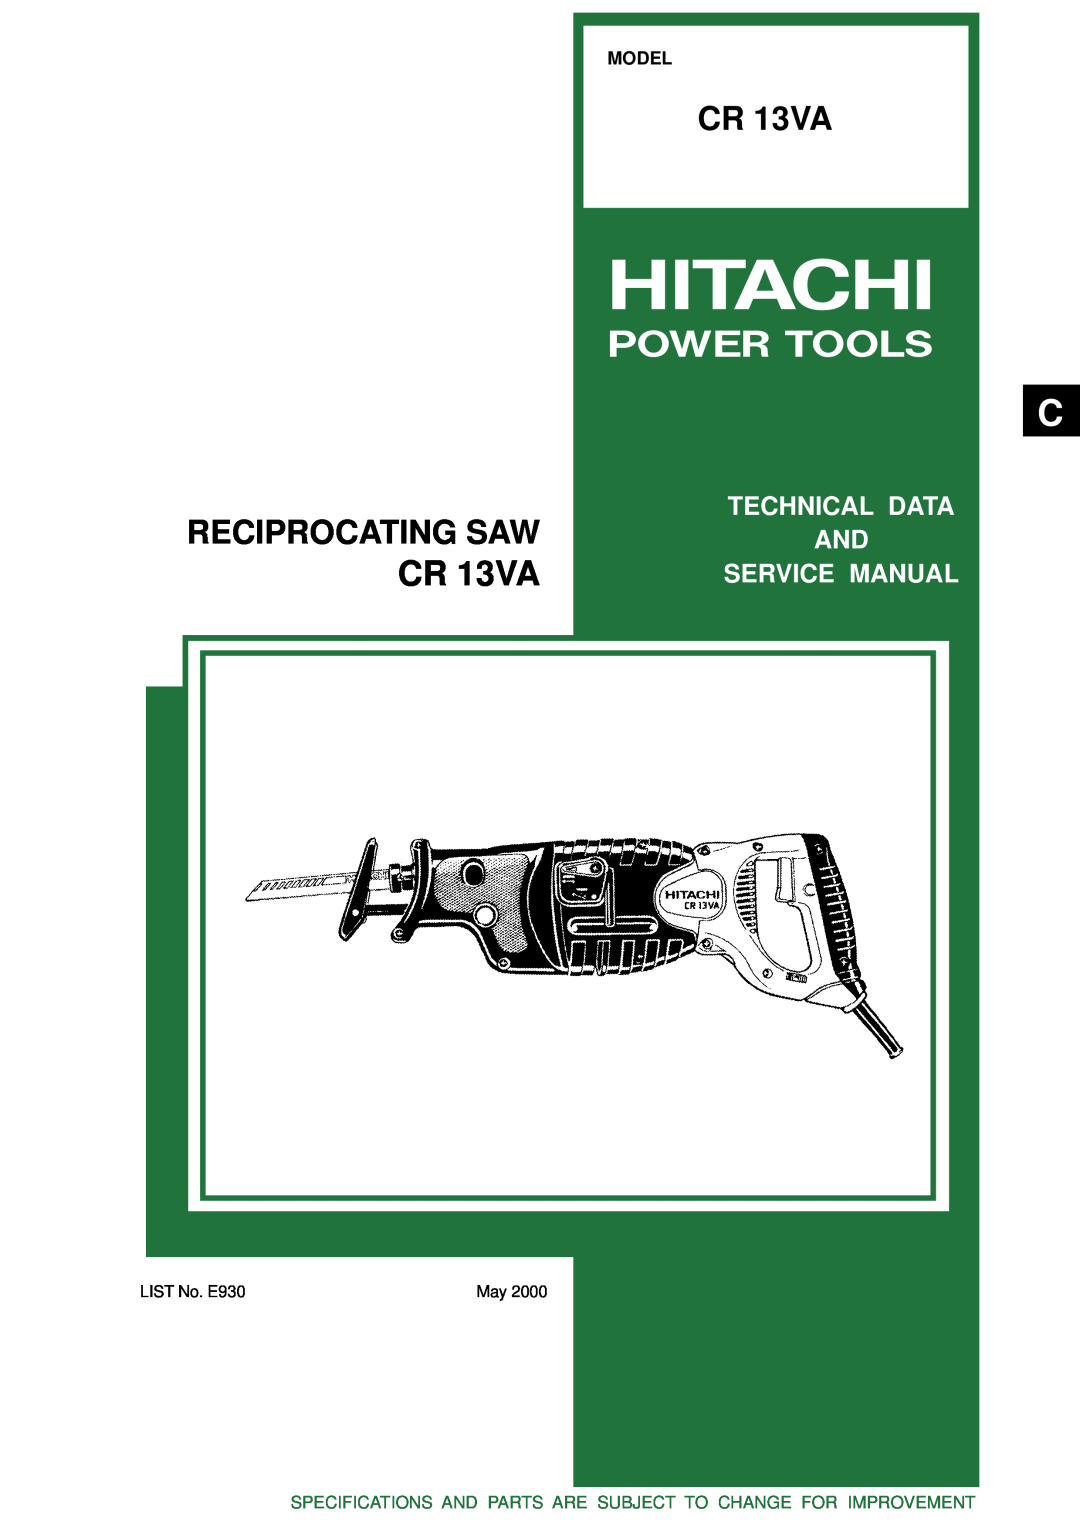 Hitachi CR 13VA service manual Reciprocating Saw, Power Tools, Model, LIST No. E930 